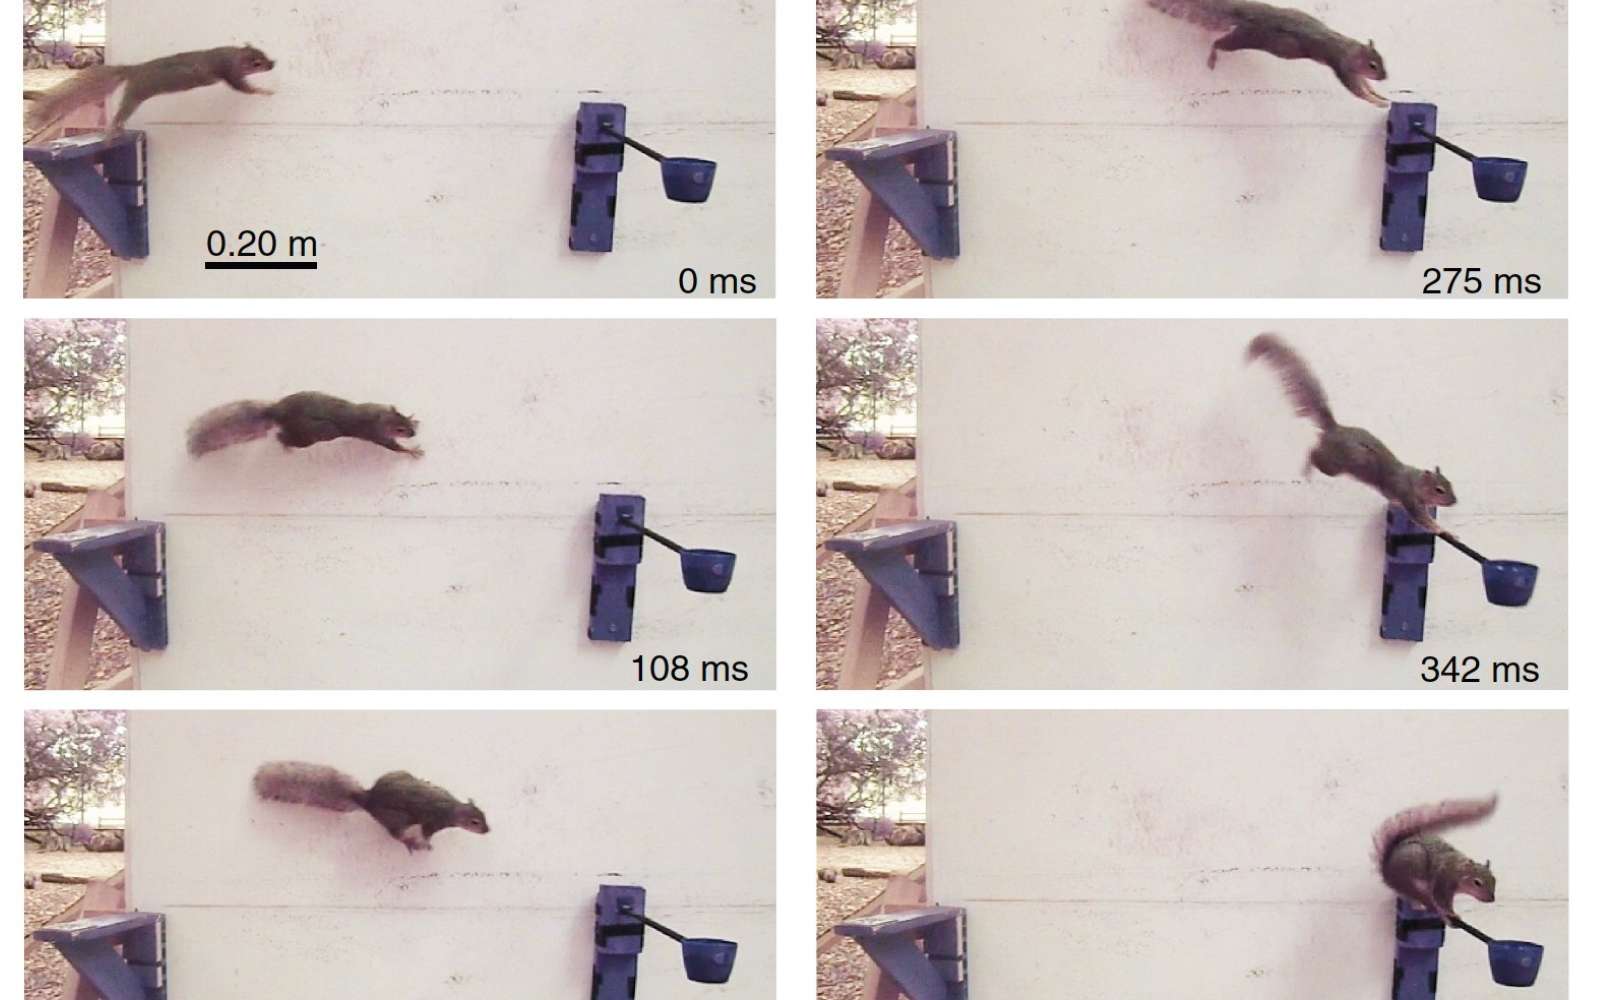 Les scientifiques cherchent à modéliser la prise de décision des écureuils pour évoluer dans leur parcours à la recherche de noisettes. © US Army